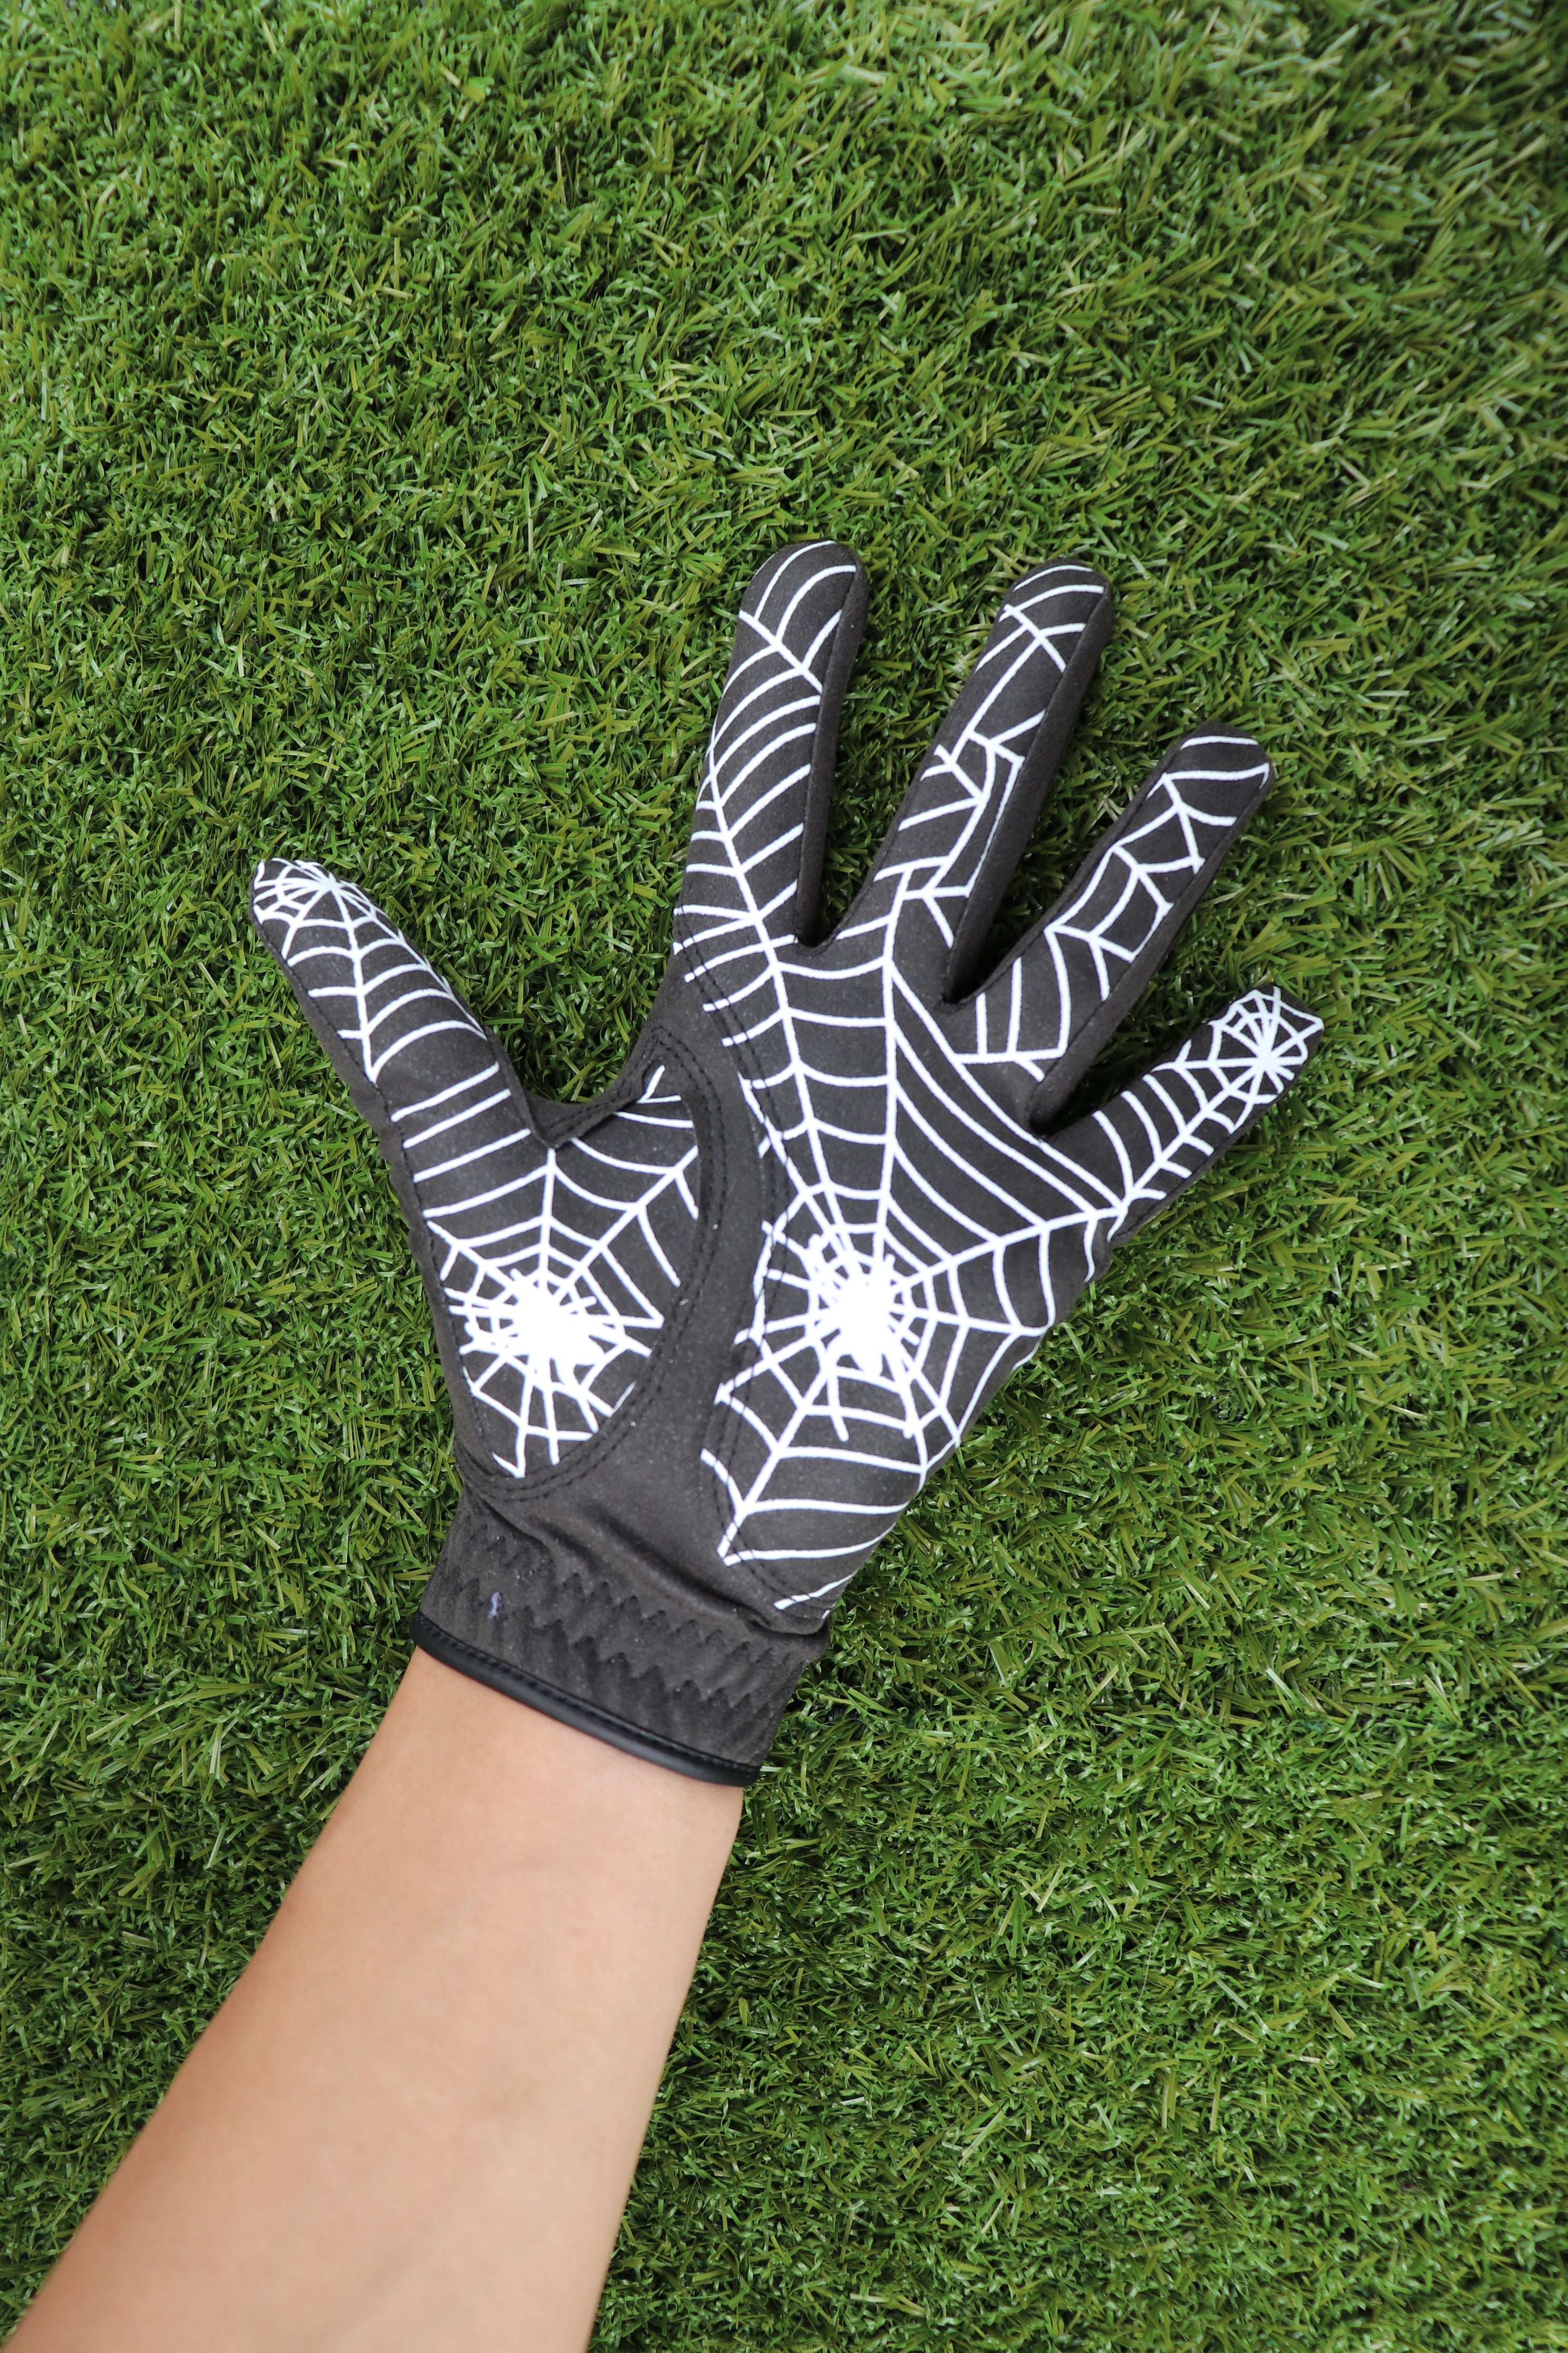 GOuft Spiderweb Golf Glove Black Edition - White